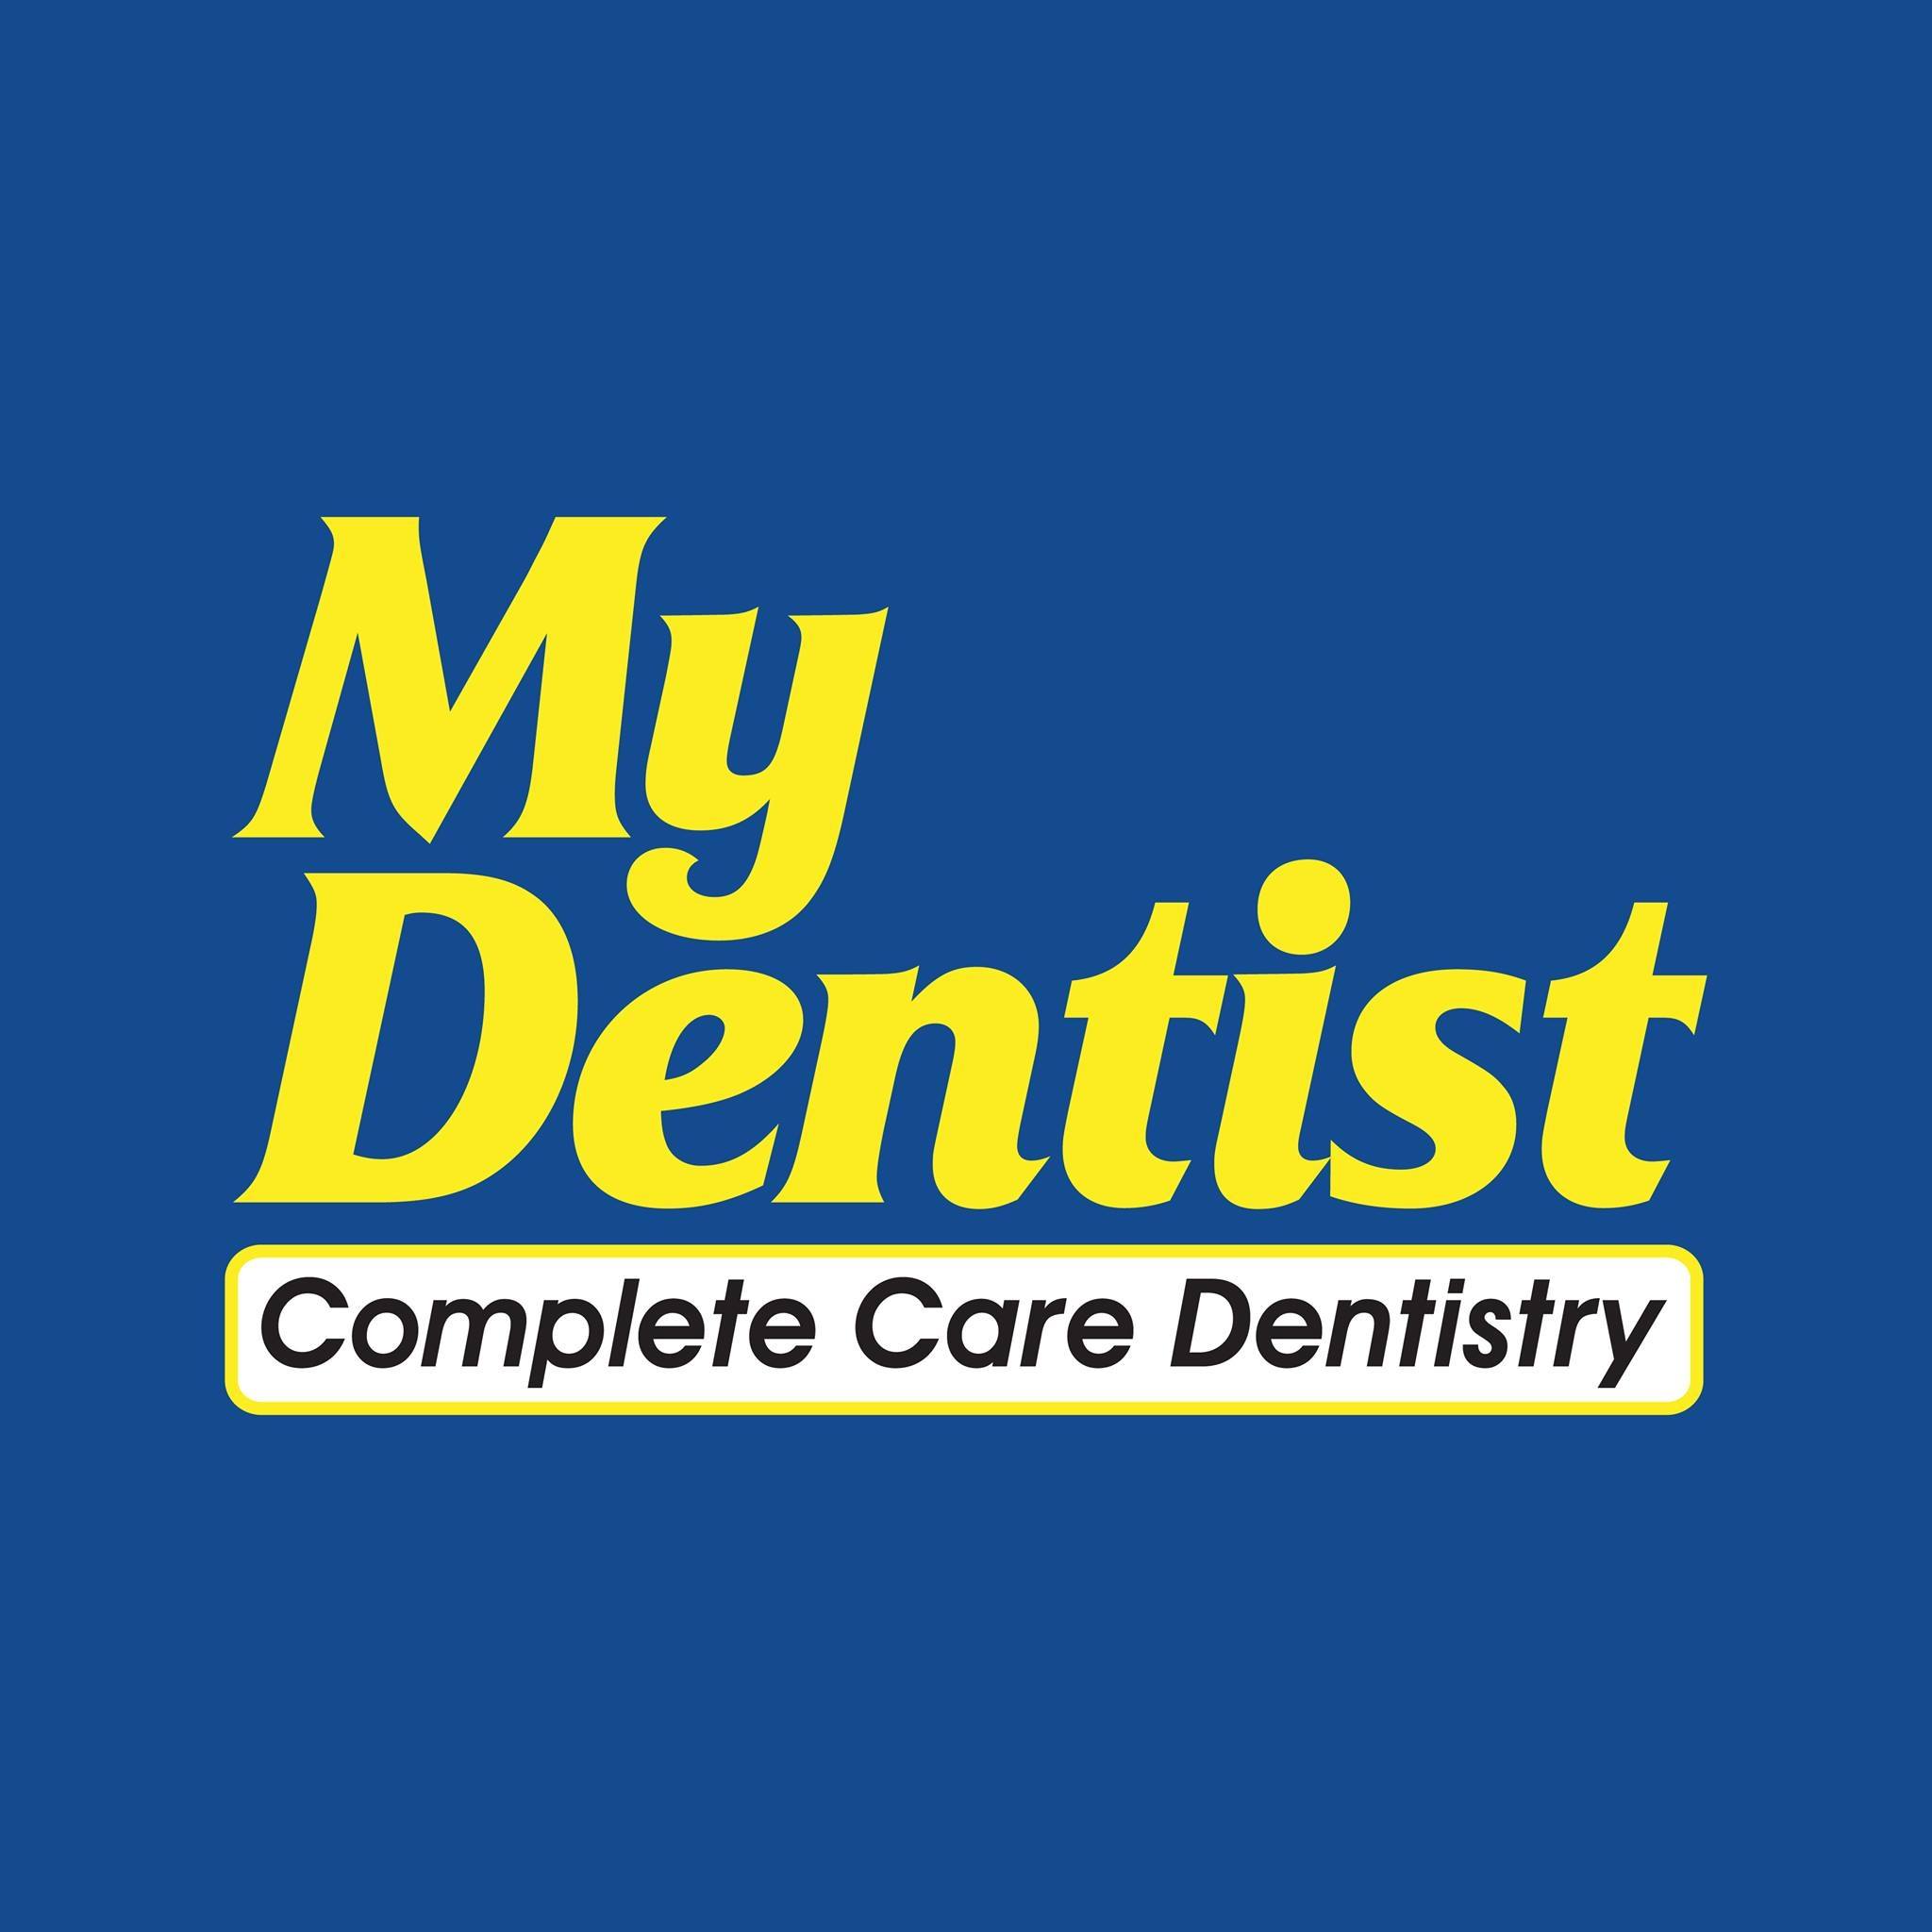 Company logo of My Dentist